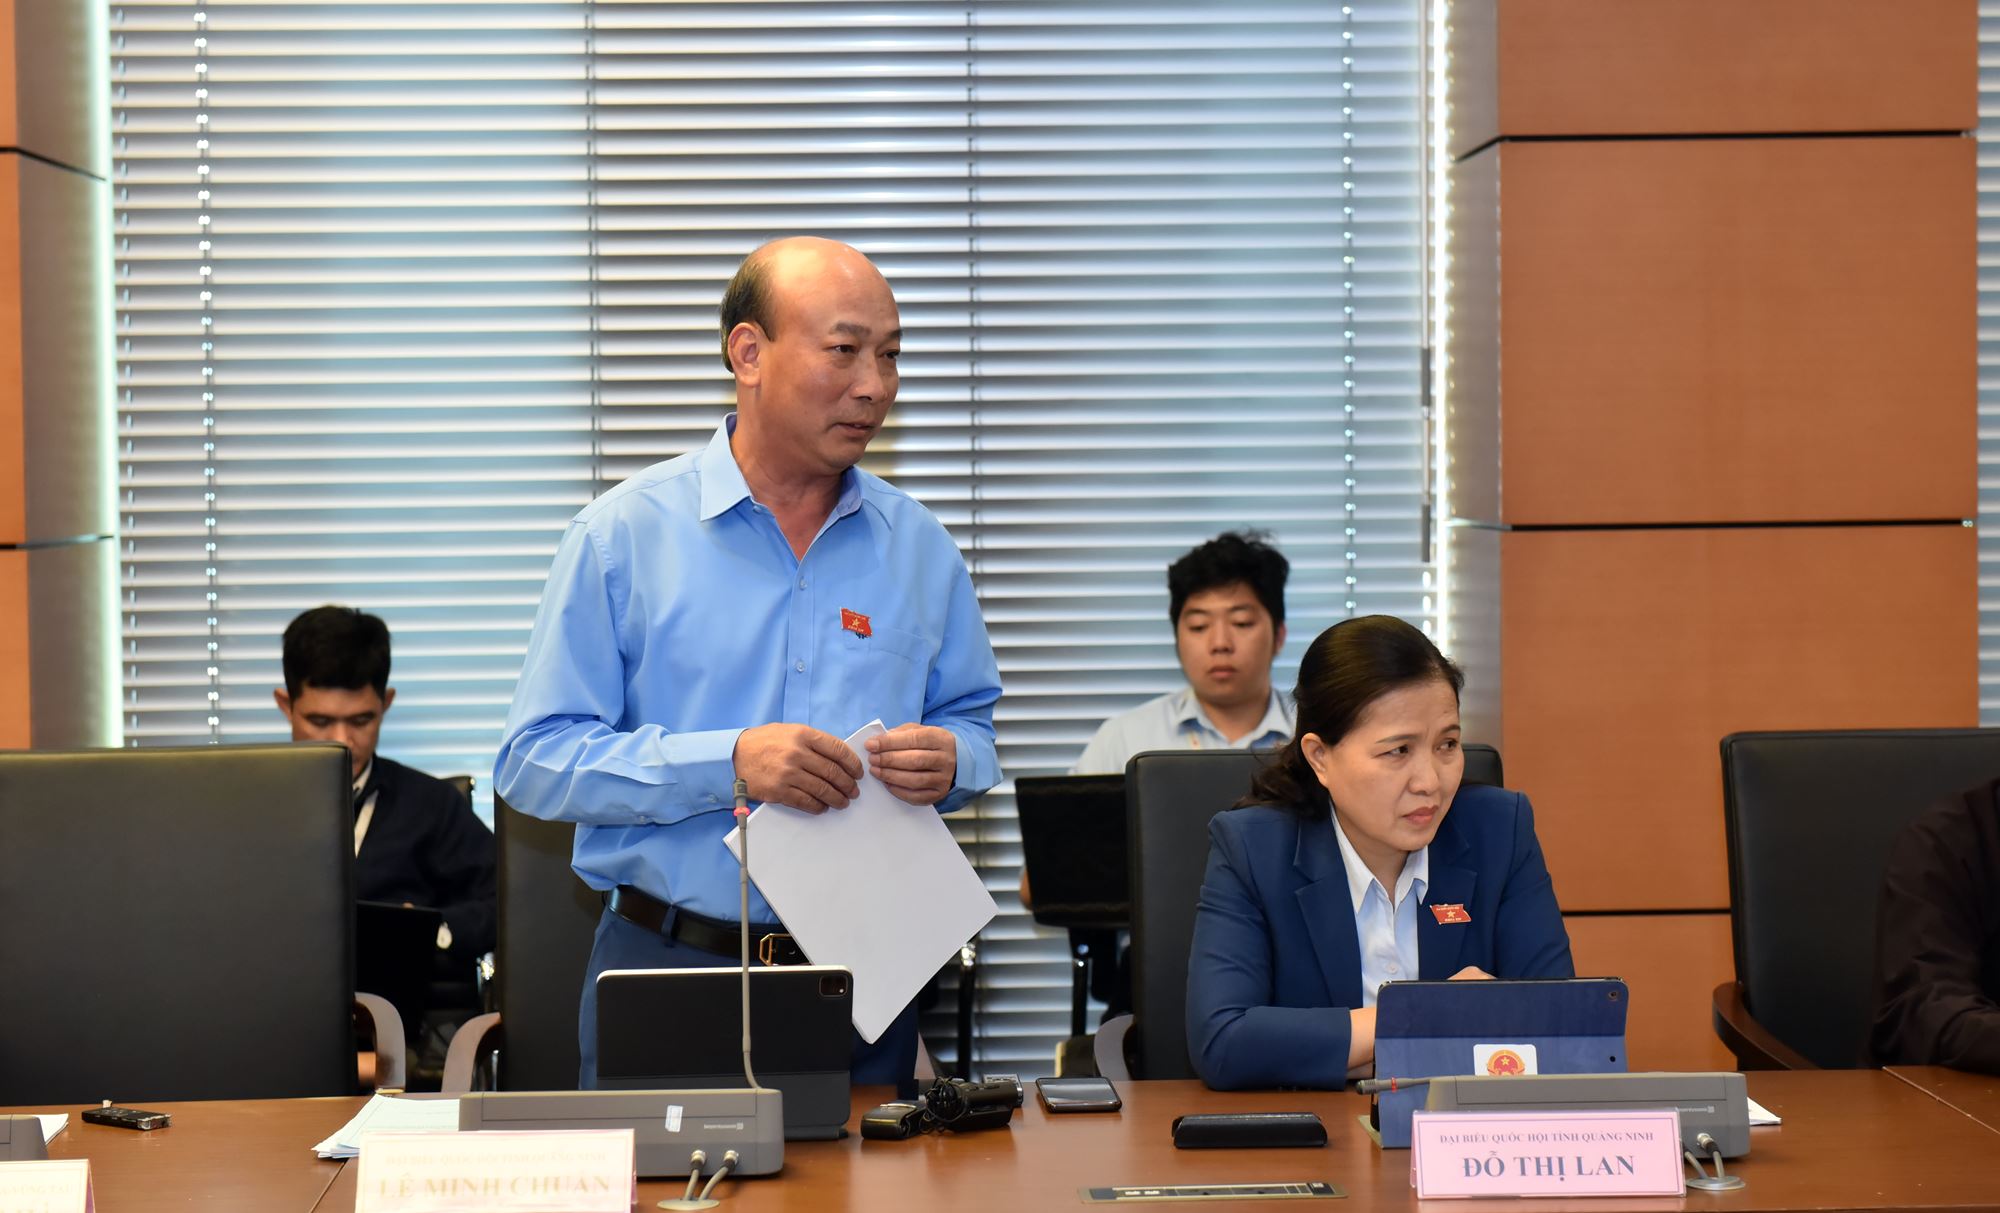 Đại biểu Lê Minh Chuẩn, Chủ tịch HĐTV Tập đoàn Công nghiệp Than - Khoáng sản Việt Nam, ĐBQH tỉnh 